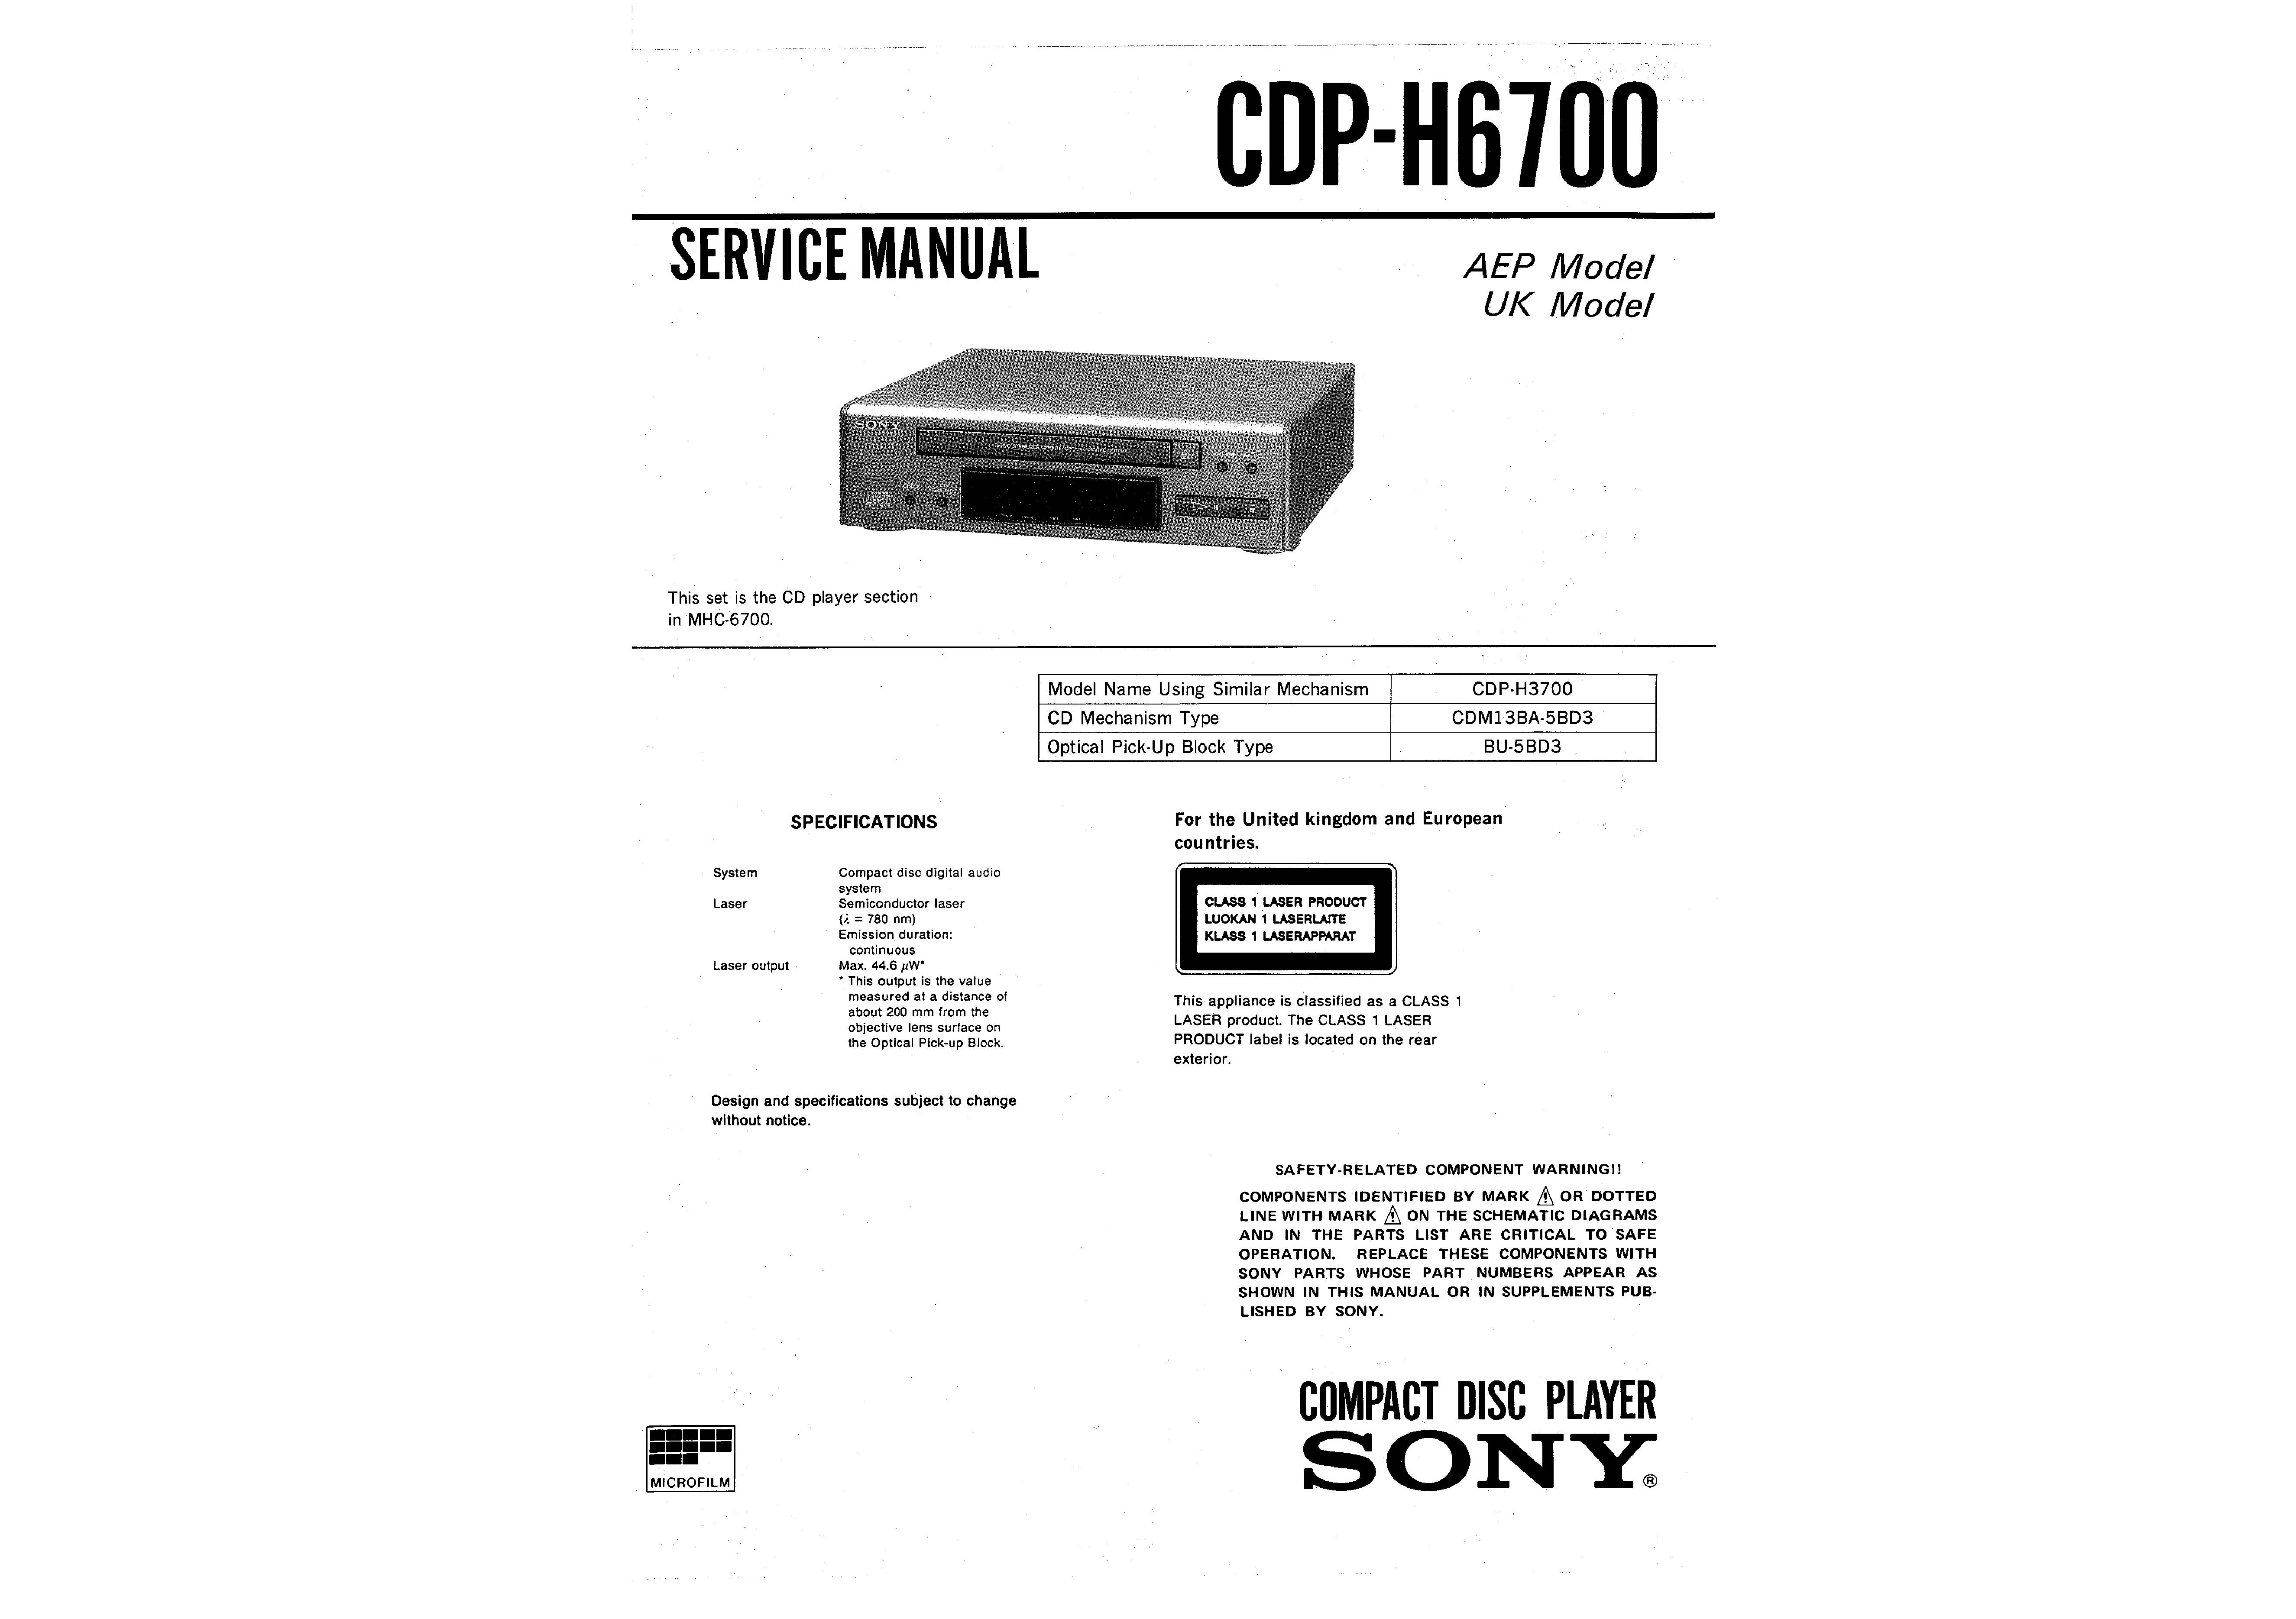 Sony CDP-H6700